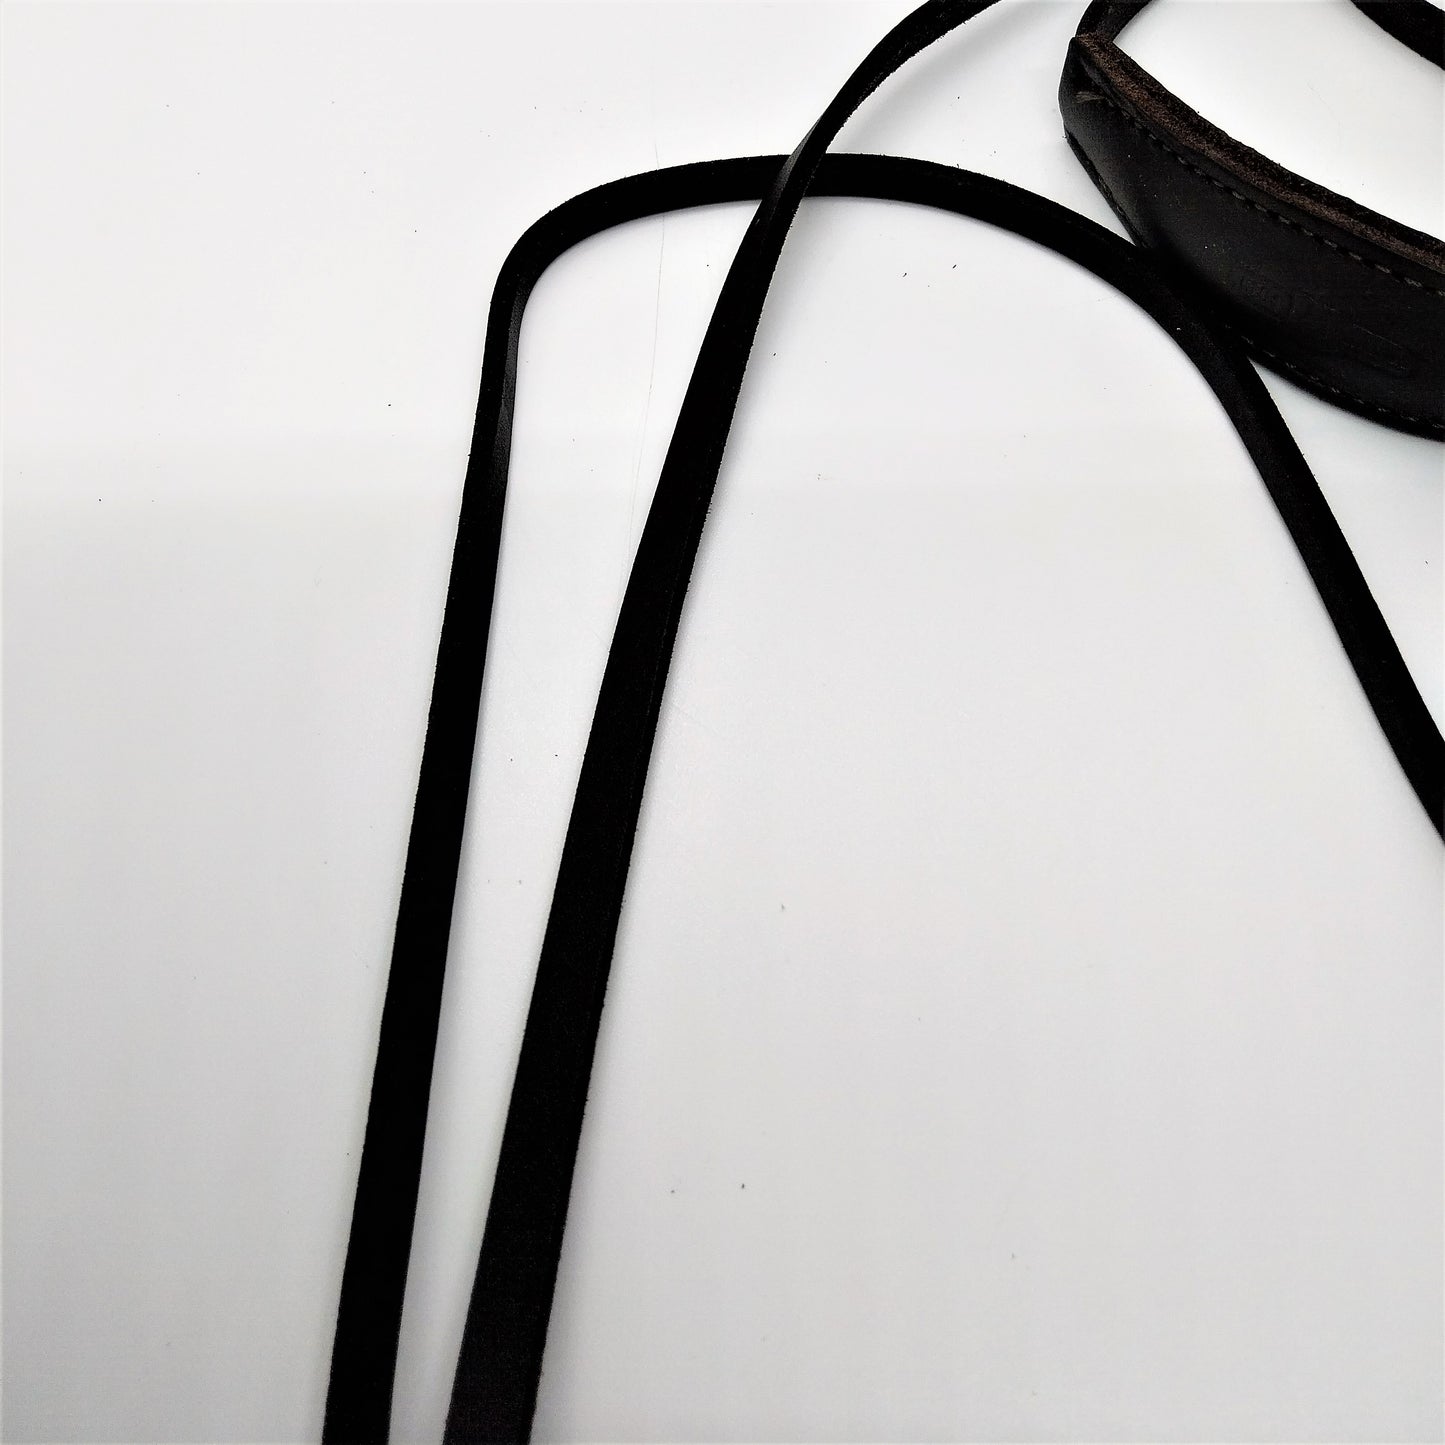 Fettleder Schauleine - lang - mit Kehlkopfschutz ca. 8mm oder ca. 10mm breit